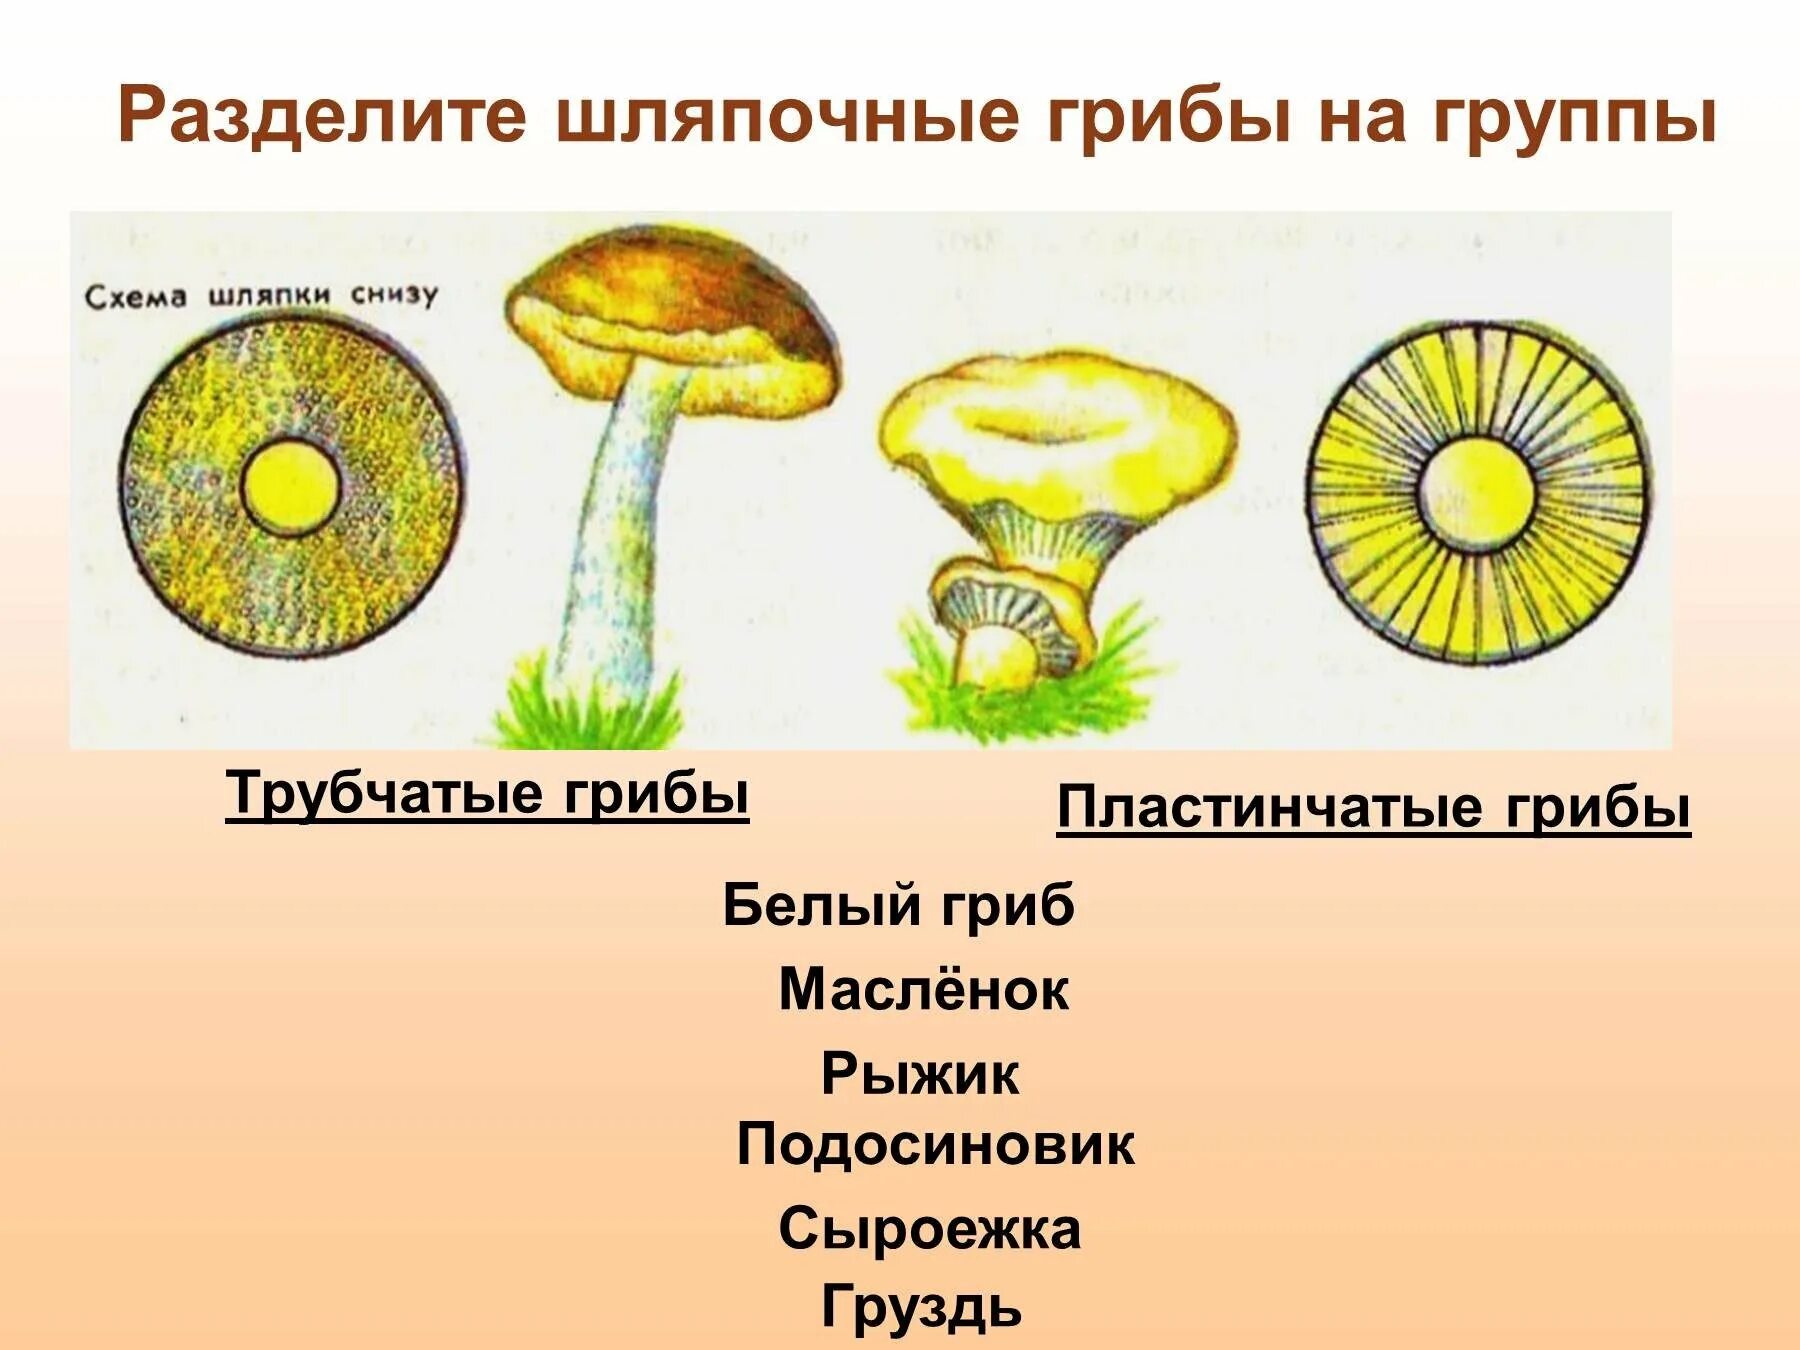 Шляпочные грибы трубчатые и пластинчатые. Трубчатые Шляпочные грибы Рыжик. Трубчатые и пластинчатые грибы 5 класс биология. Трубчатые Шляпочные грибы масленок. Признаки шляпочных пластинчатых грибов